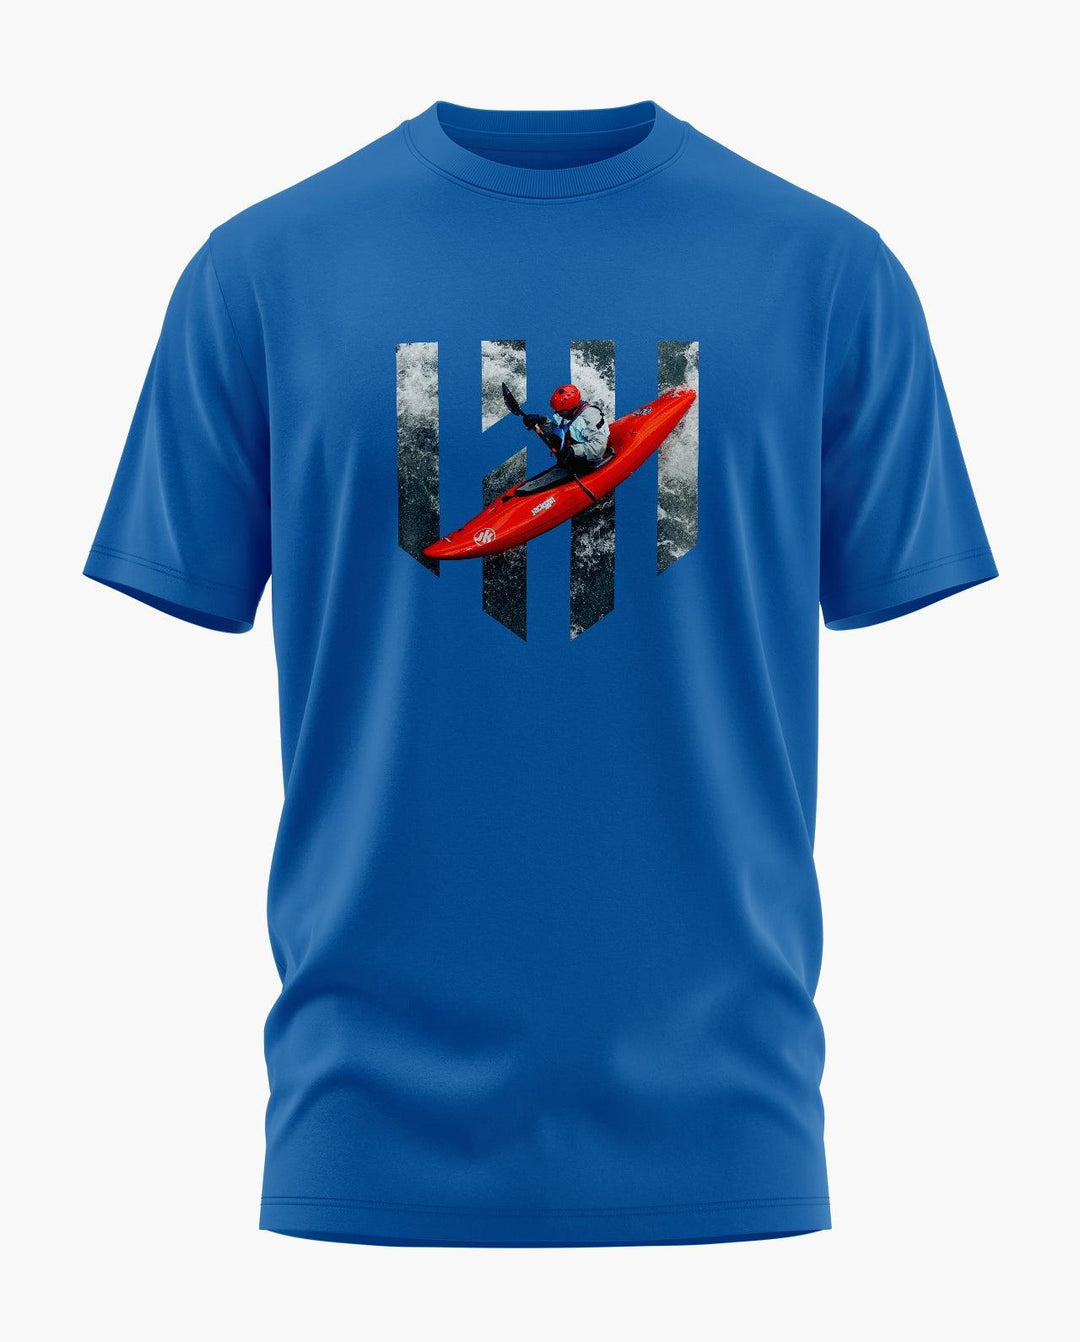 Kayaking T-Shirt - Aero Armour